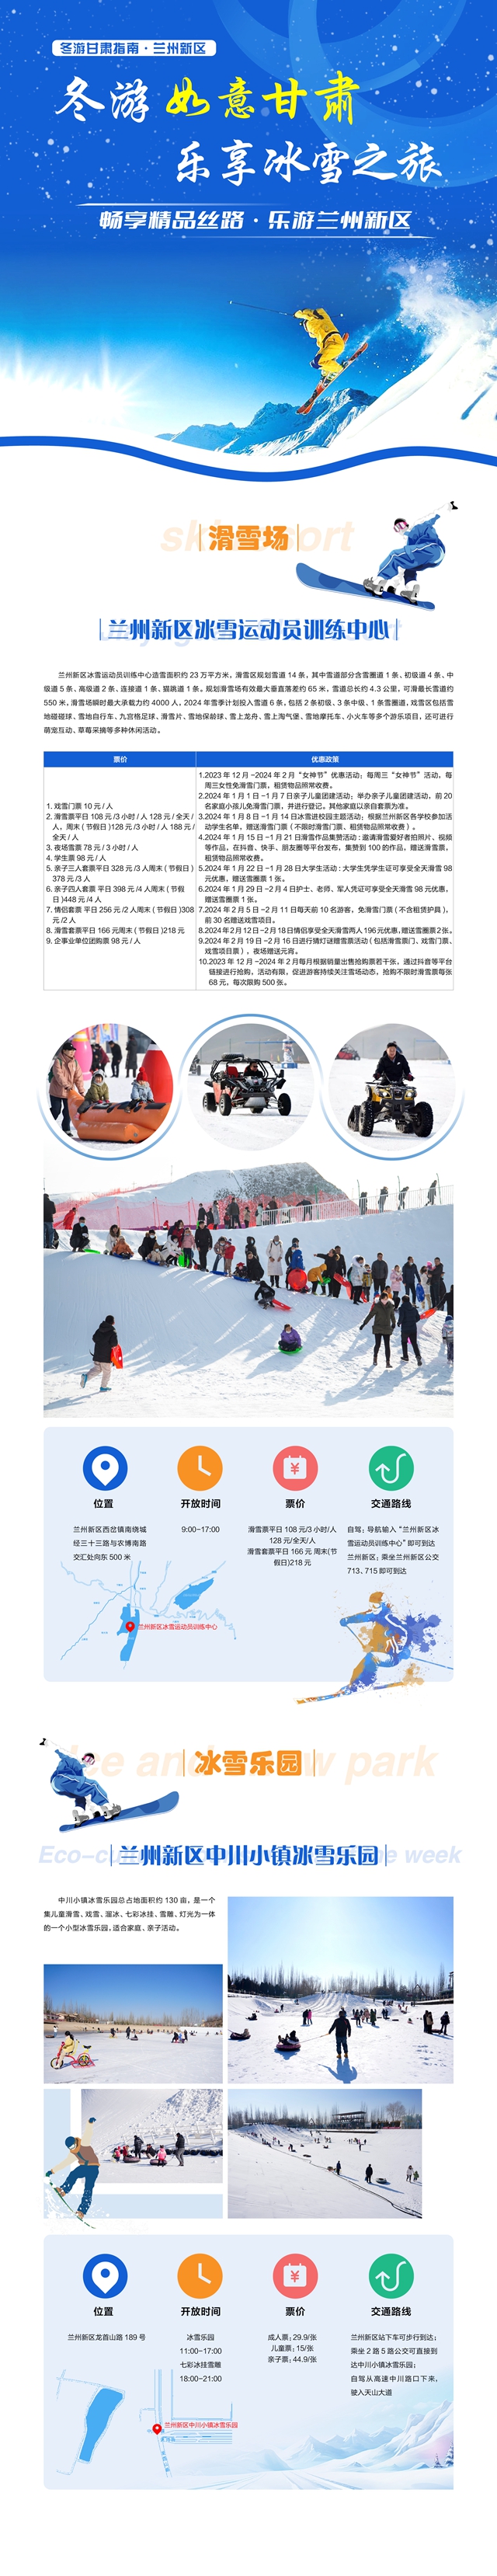 “冬游如意甘肃·乐享冰雪之旅”兰州新区旅游指南